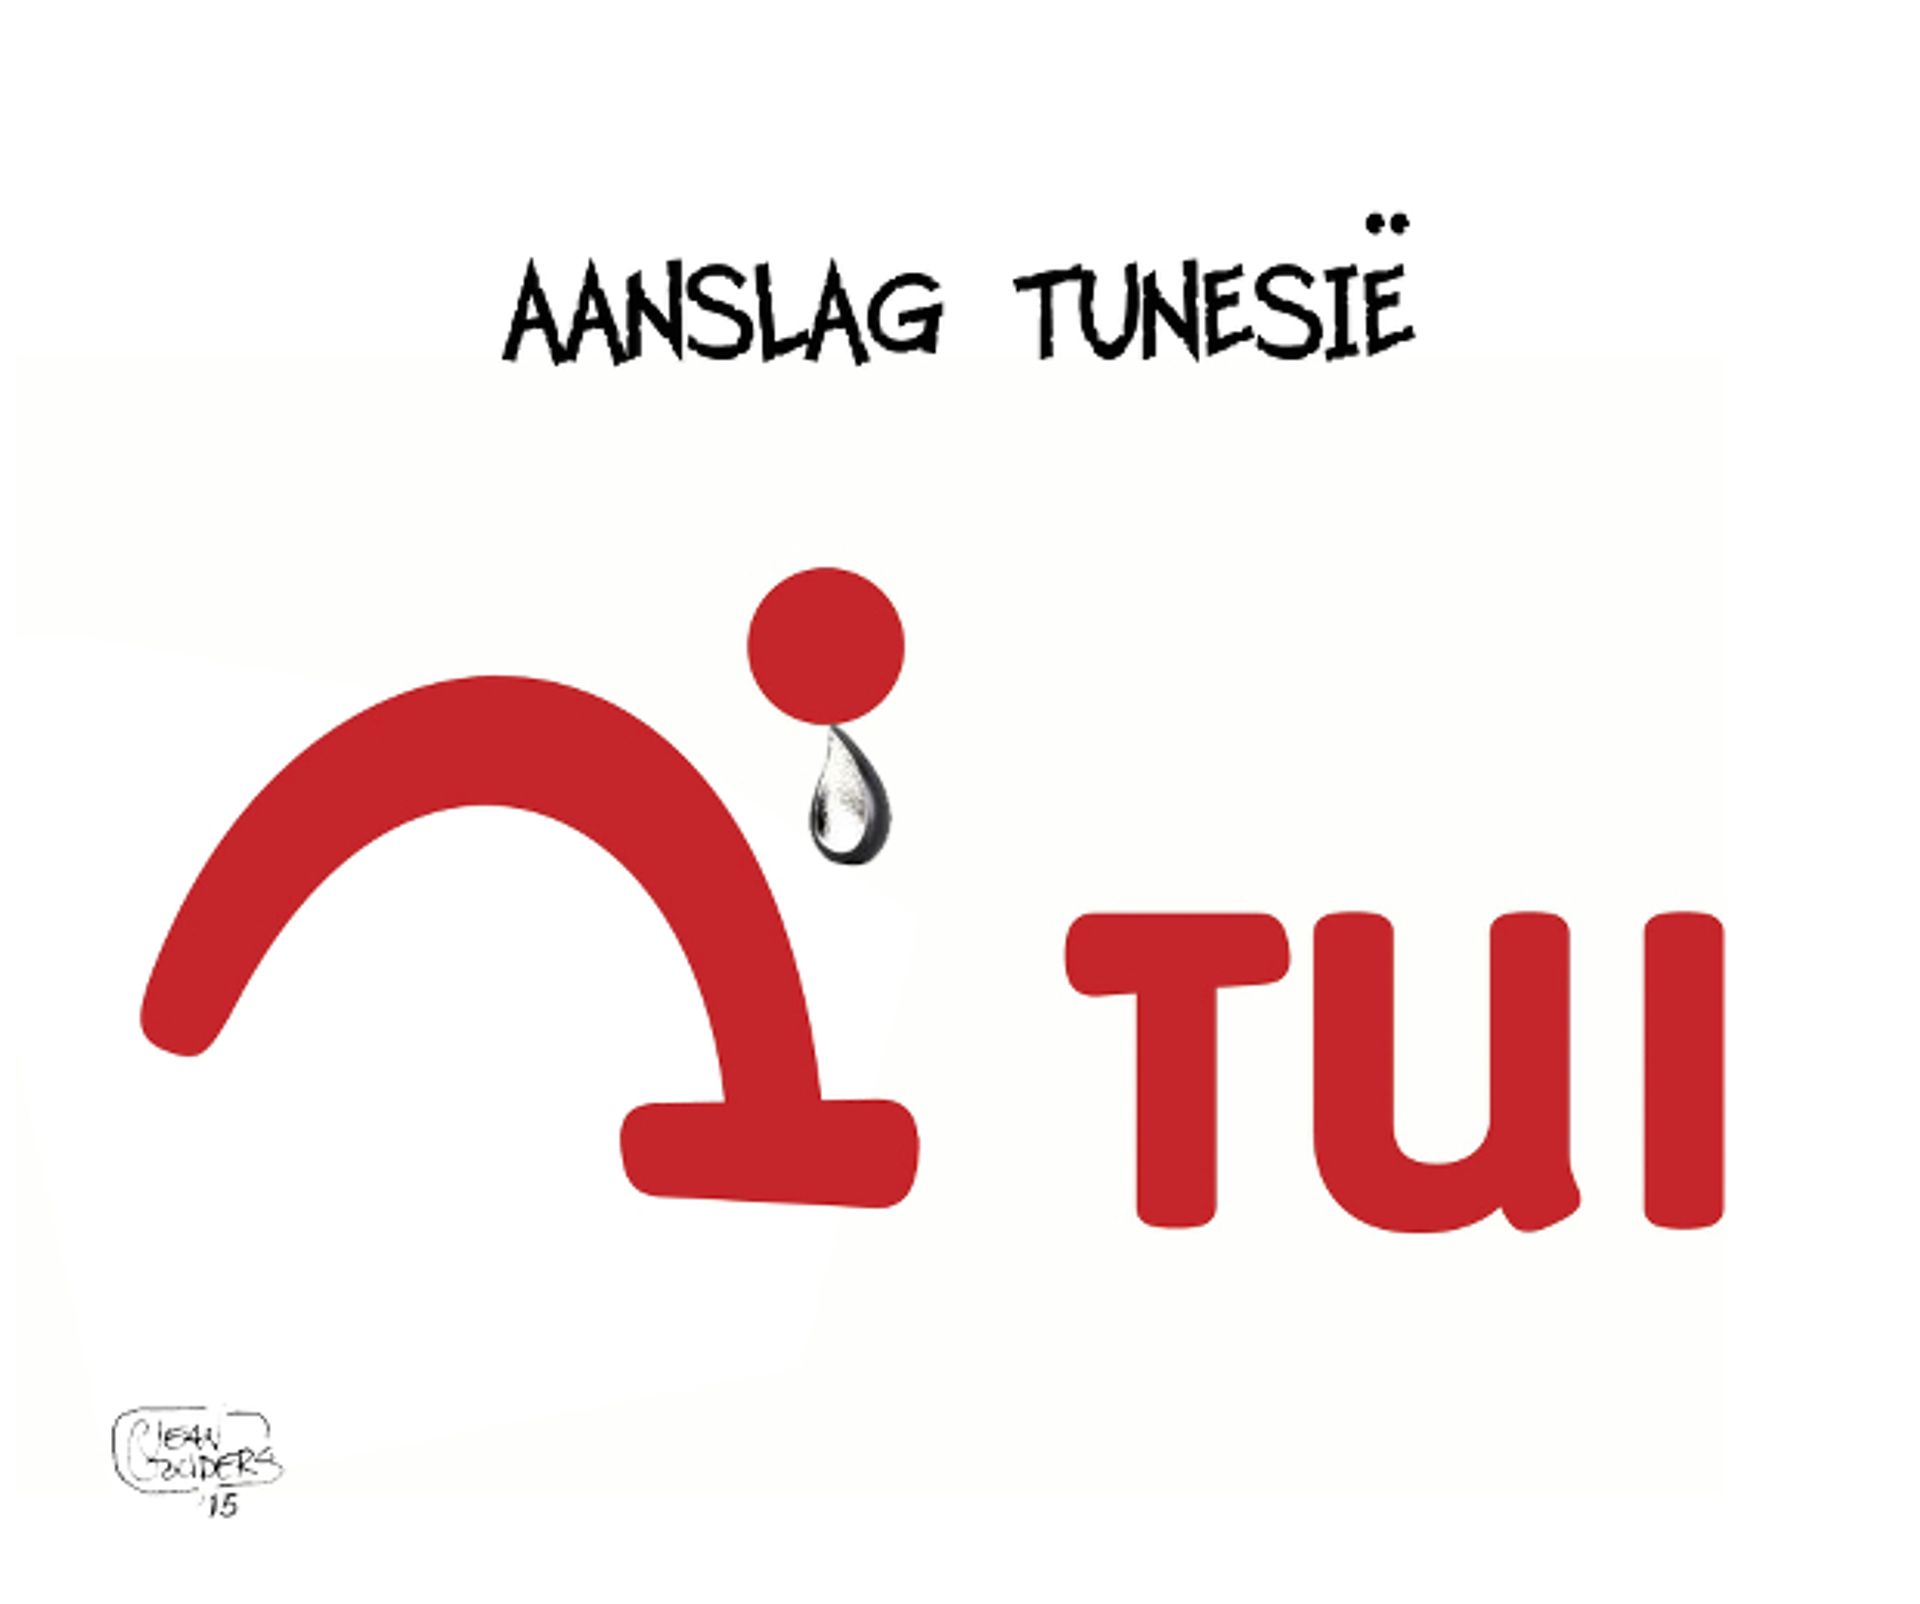 aanslag_tunesi%C3%AB_620.jpeg